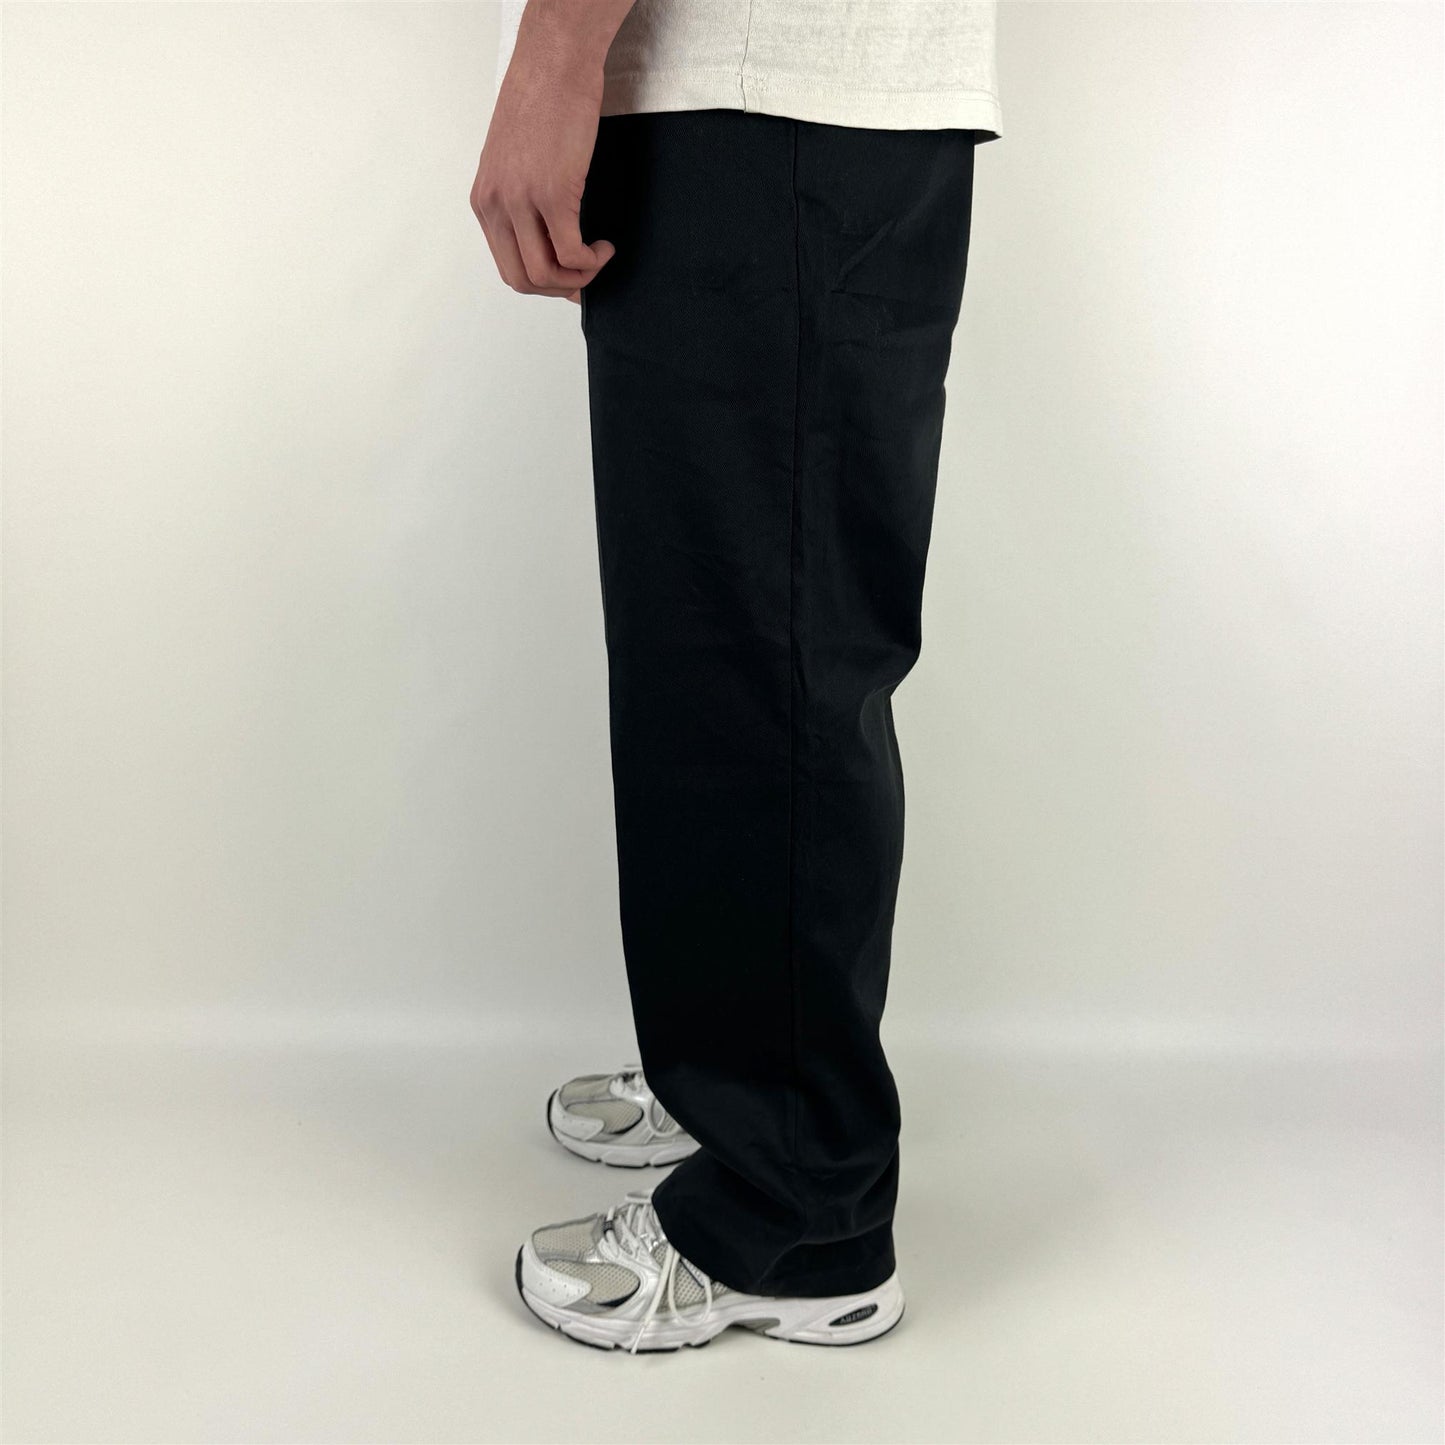 (XL) DICKIES 874 WORKWEAR PANTS